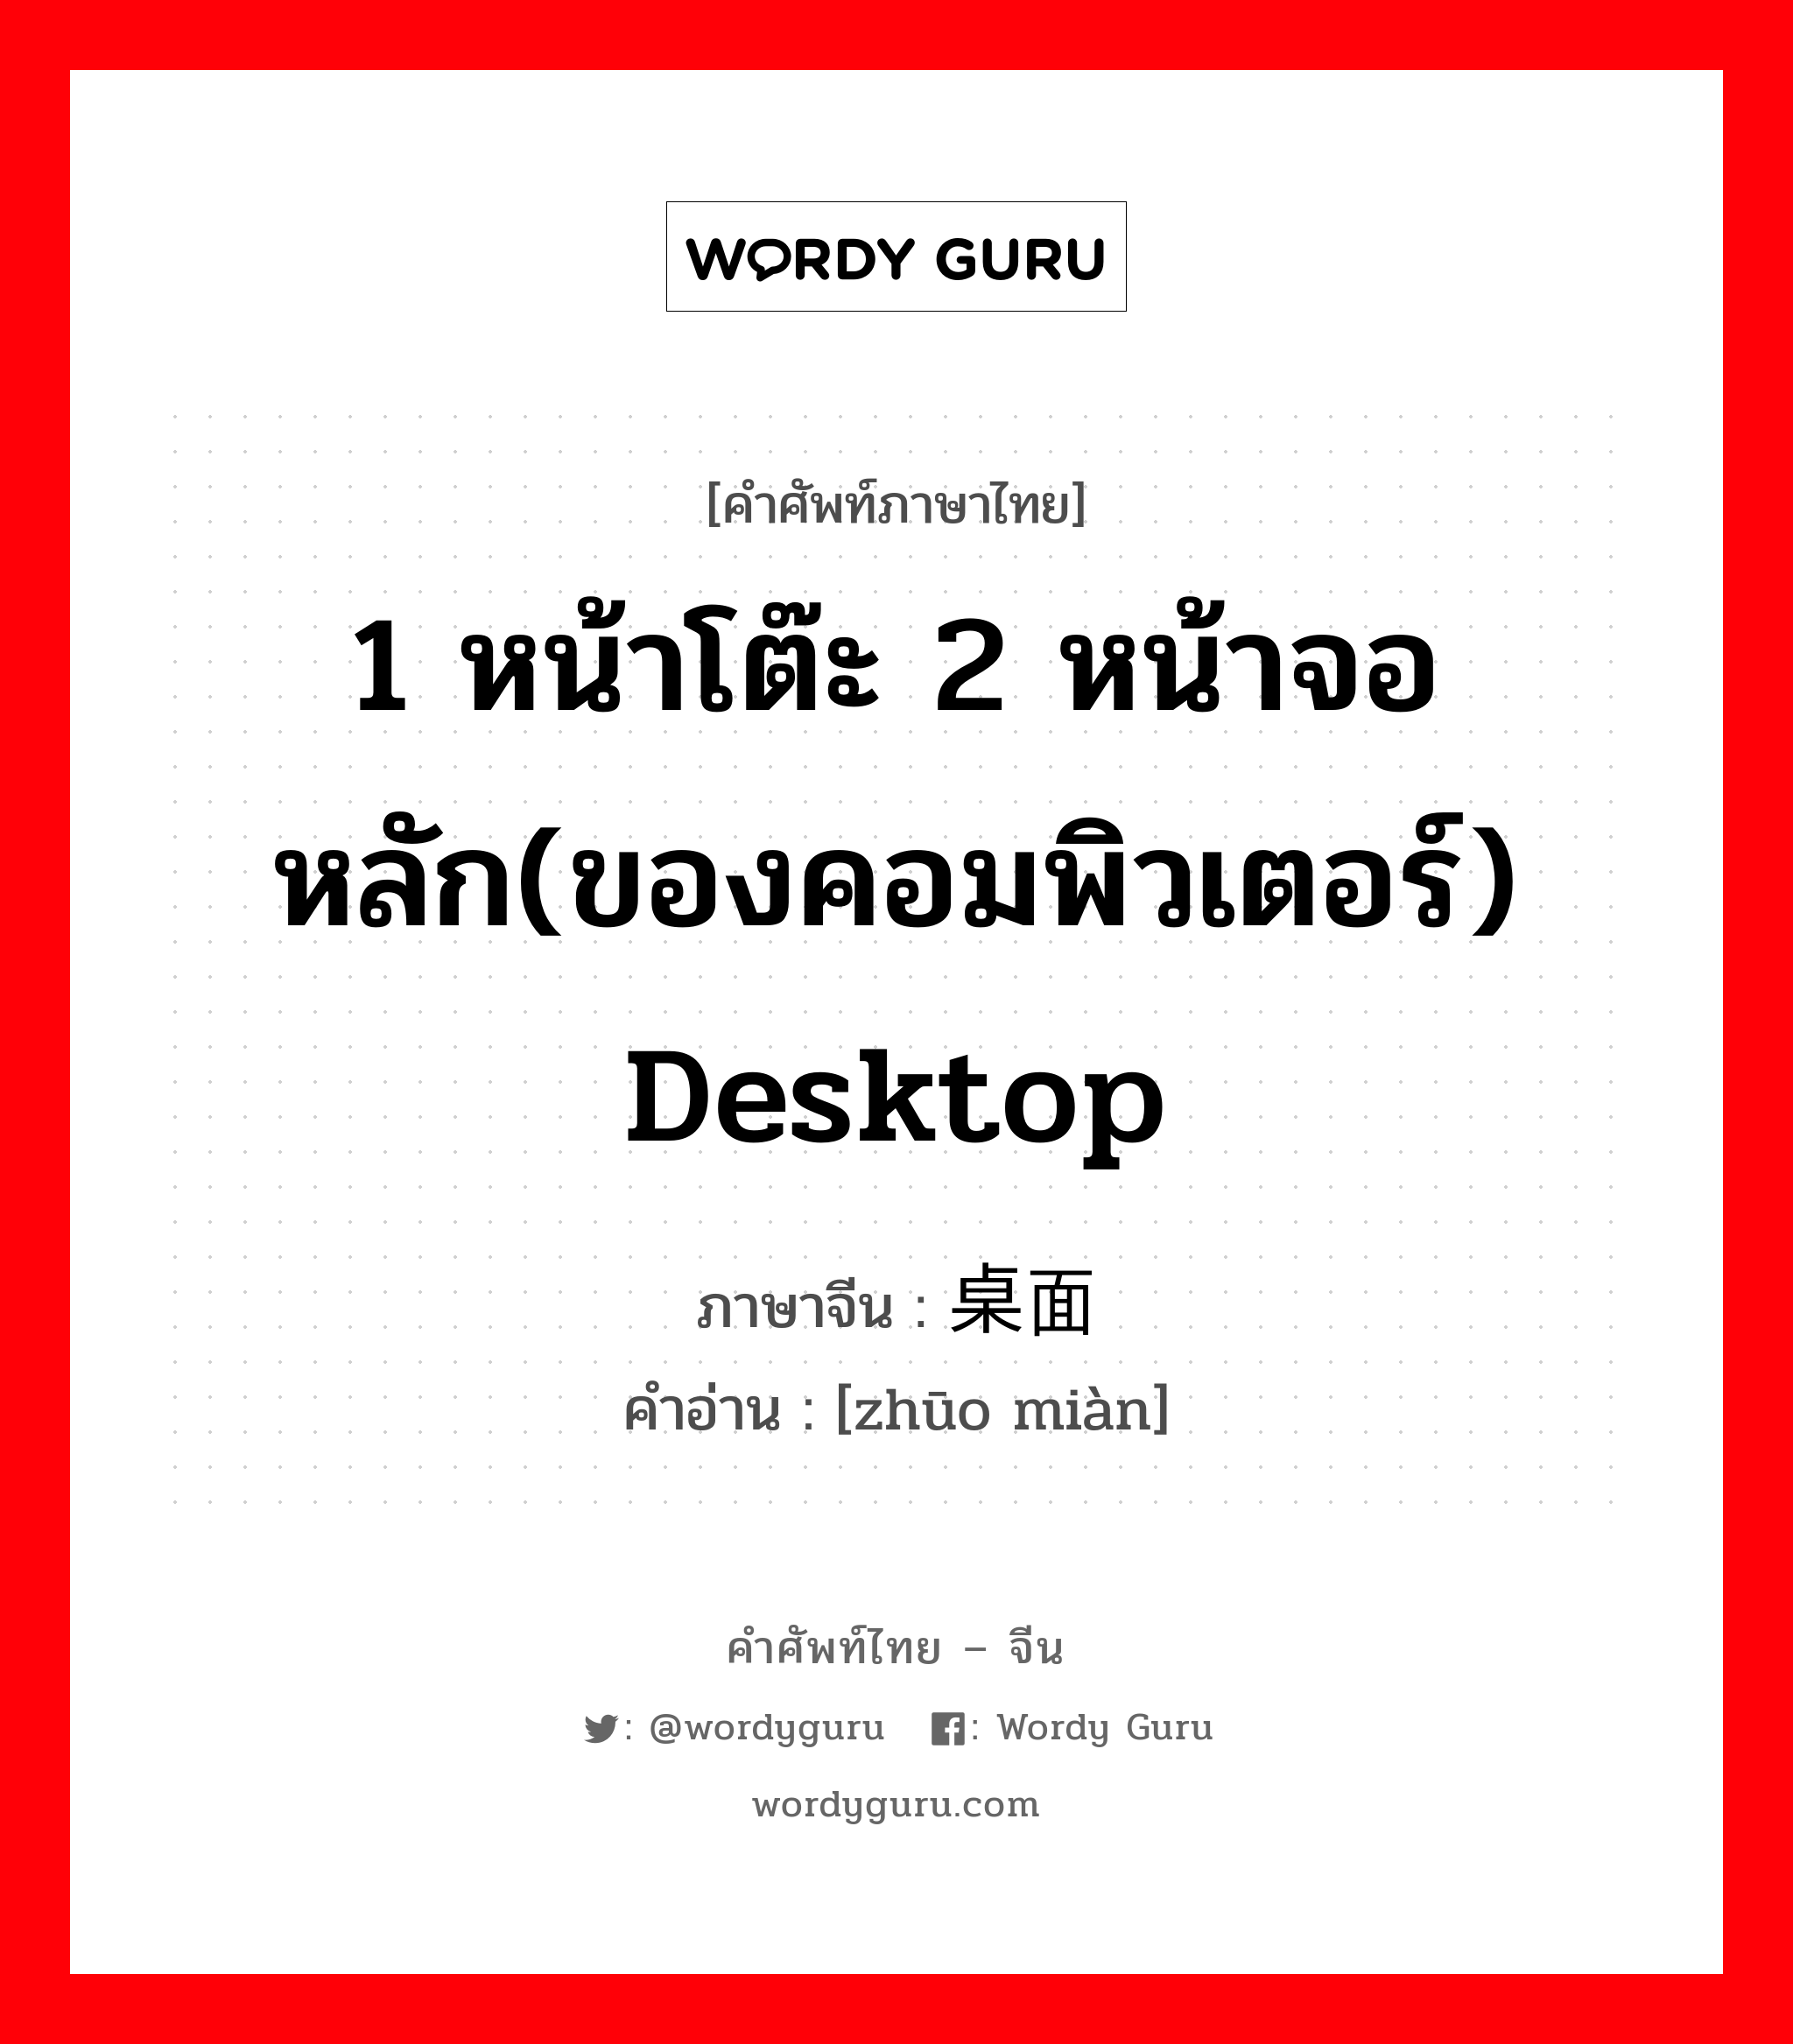 1 หน้าโต๊ะ 2 หน้าจอหลัก(ของคอมพิวเตอร์) desktop ภาษาจีนคืออะไร, คำศัพท์ภาษาไทย - จีน 1 หน้าโต๊ะ 2 หน้าจอหลัก(ของคอมพิวเตอร์) desktop ภาษาจีน 桌面 คำอ่าน [zhūo miàn]